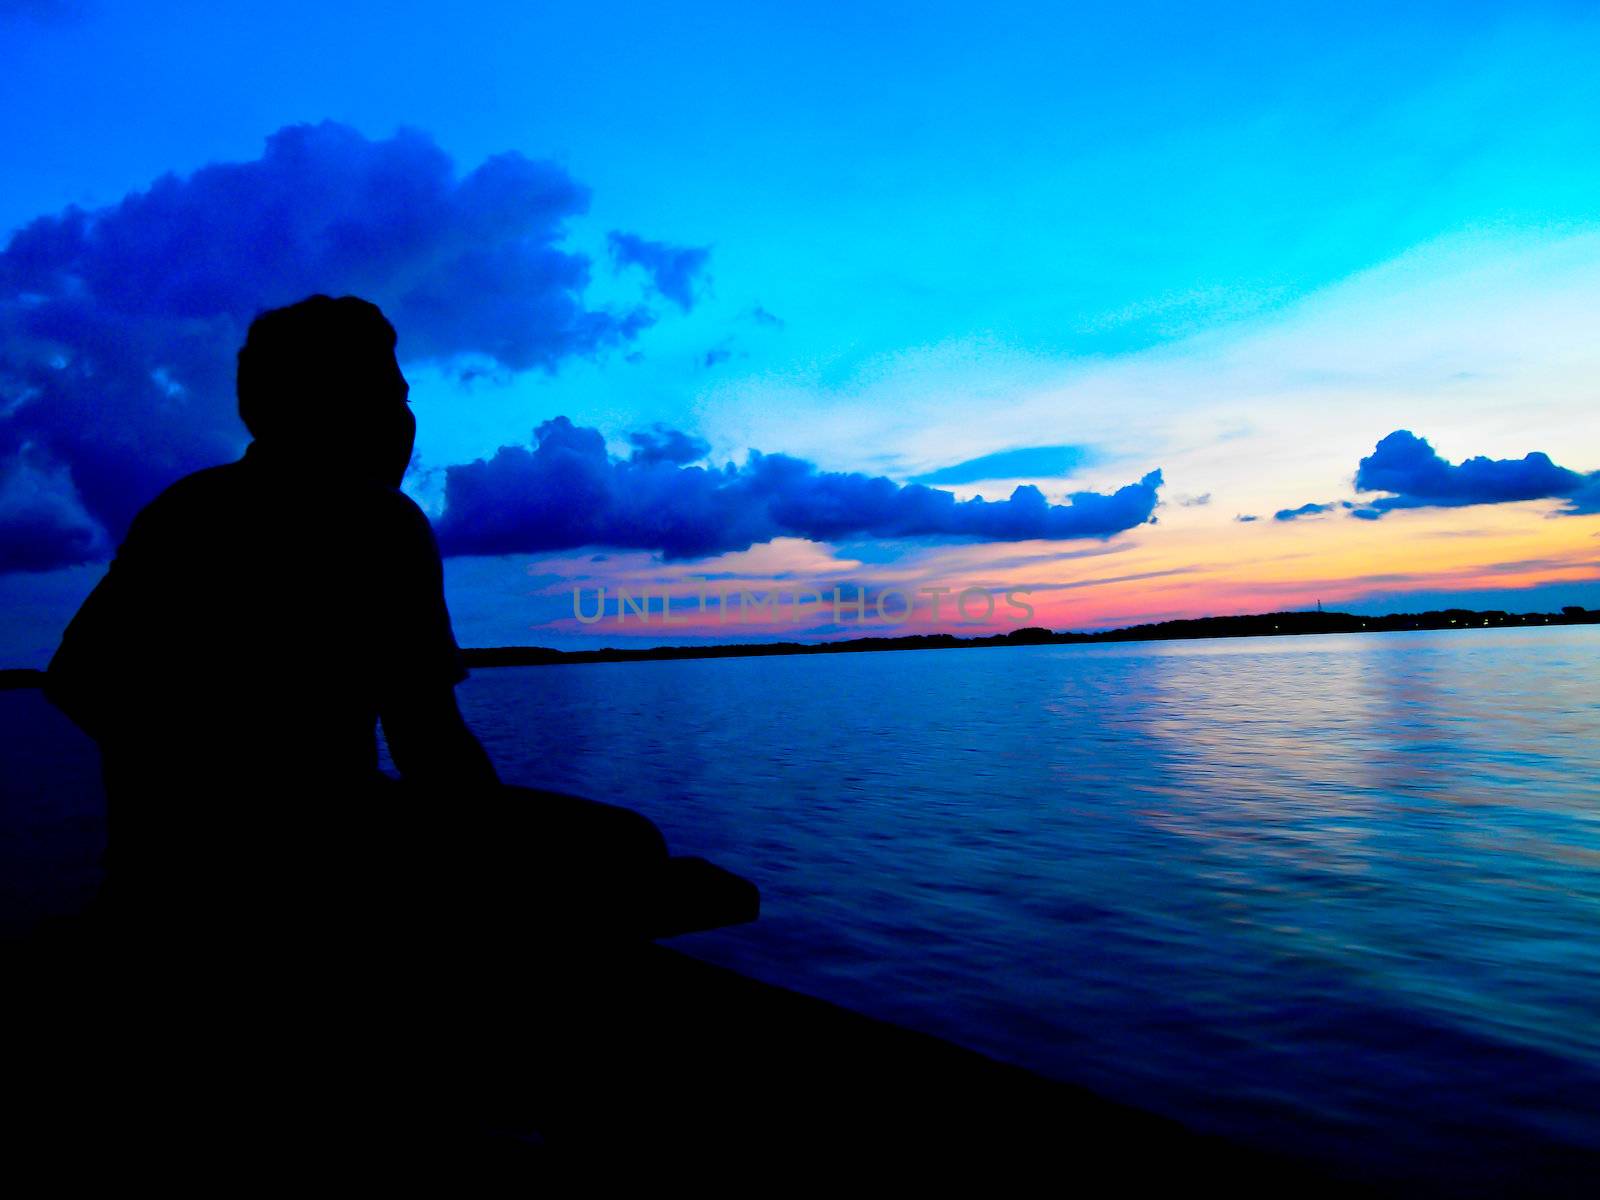 Fisherman in twilight sunset by gjeerawut